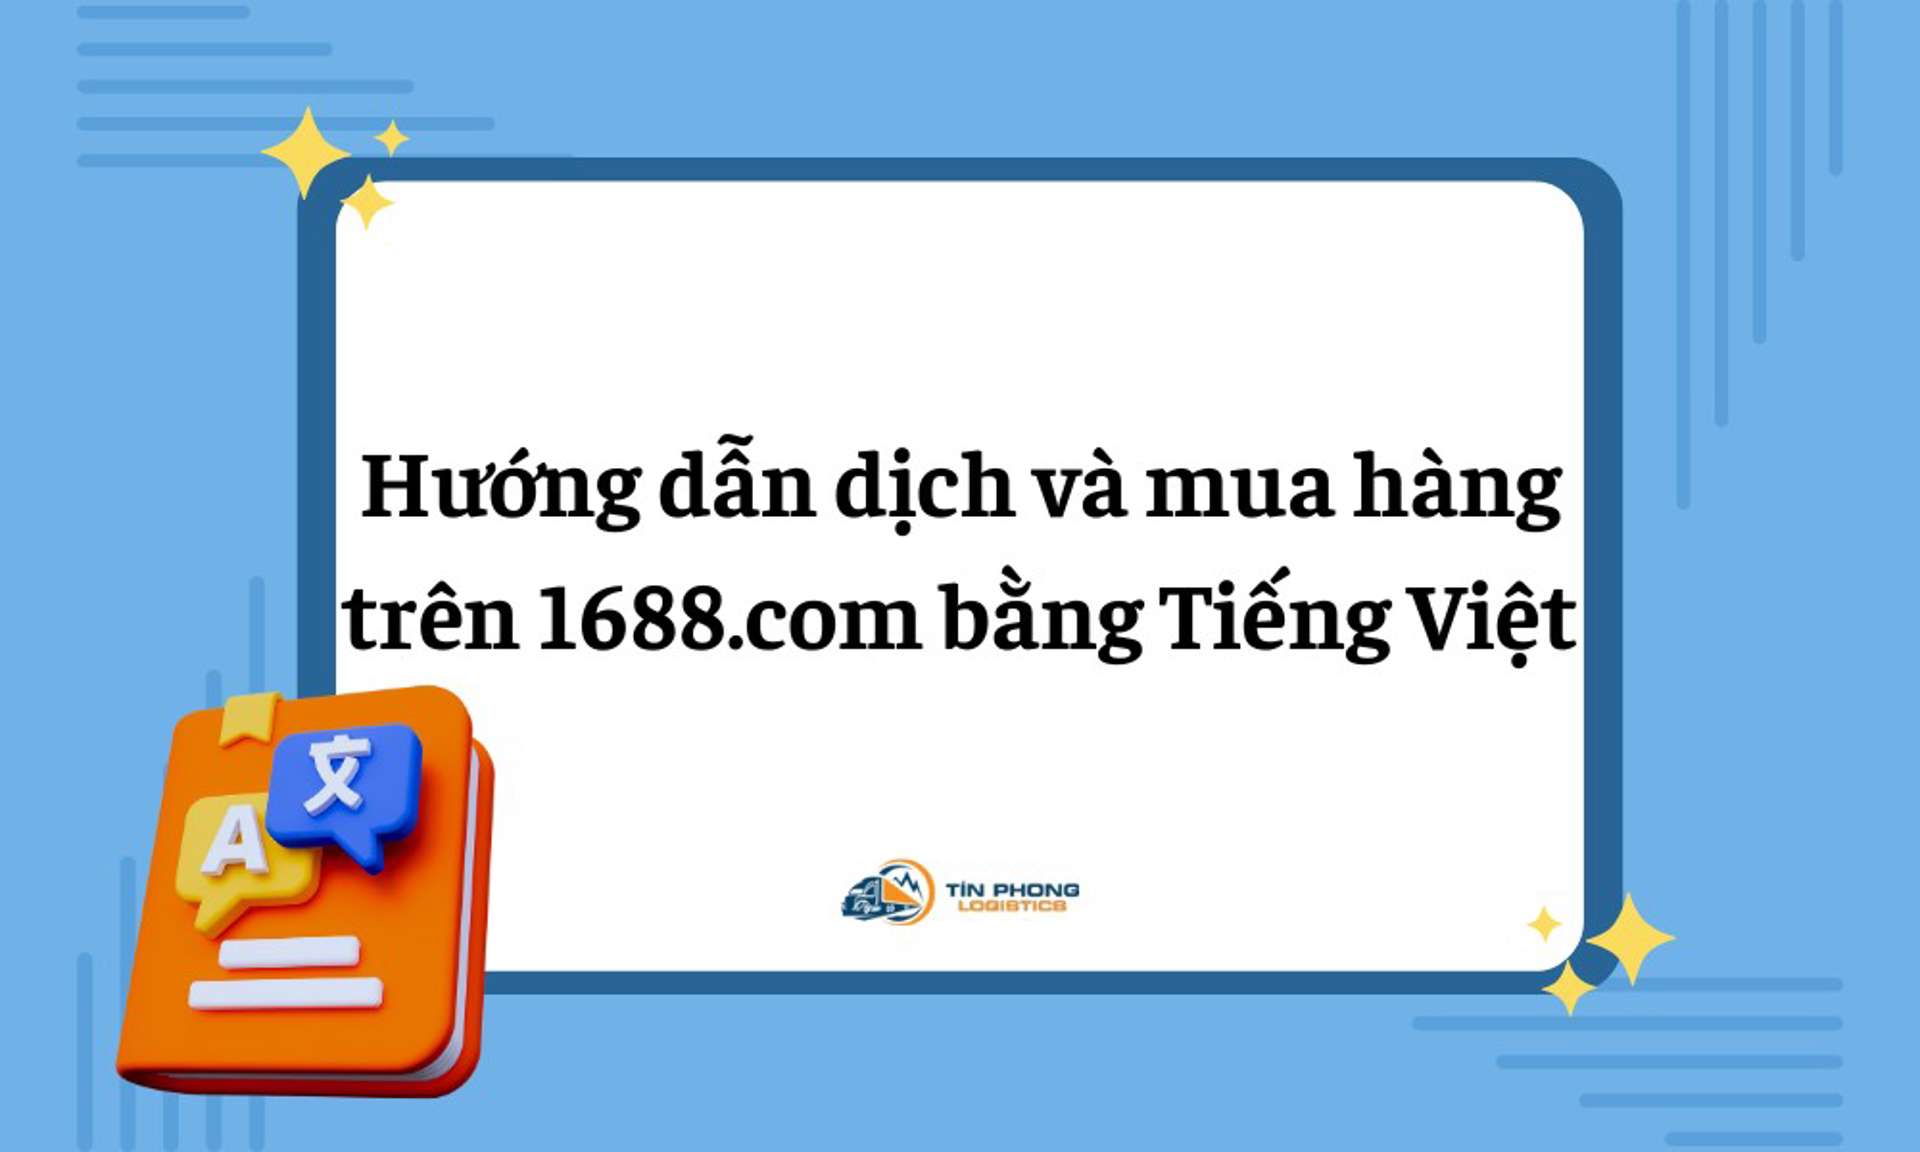 Hướng dẫn dịch và mua hàng trên 1688.com bằng Tiếng Việt